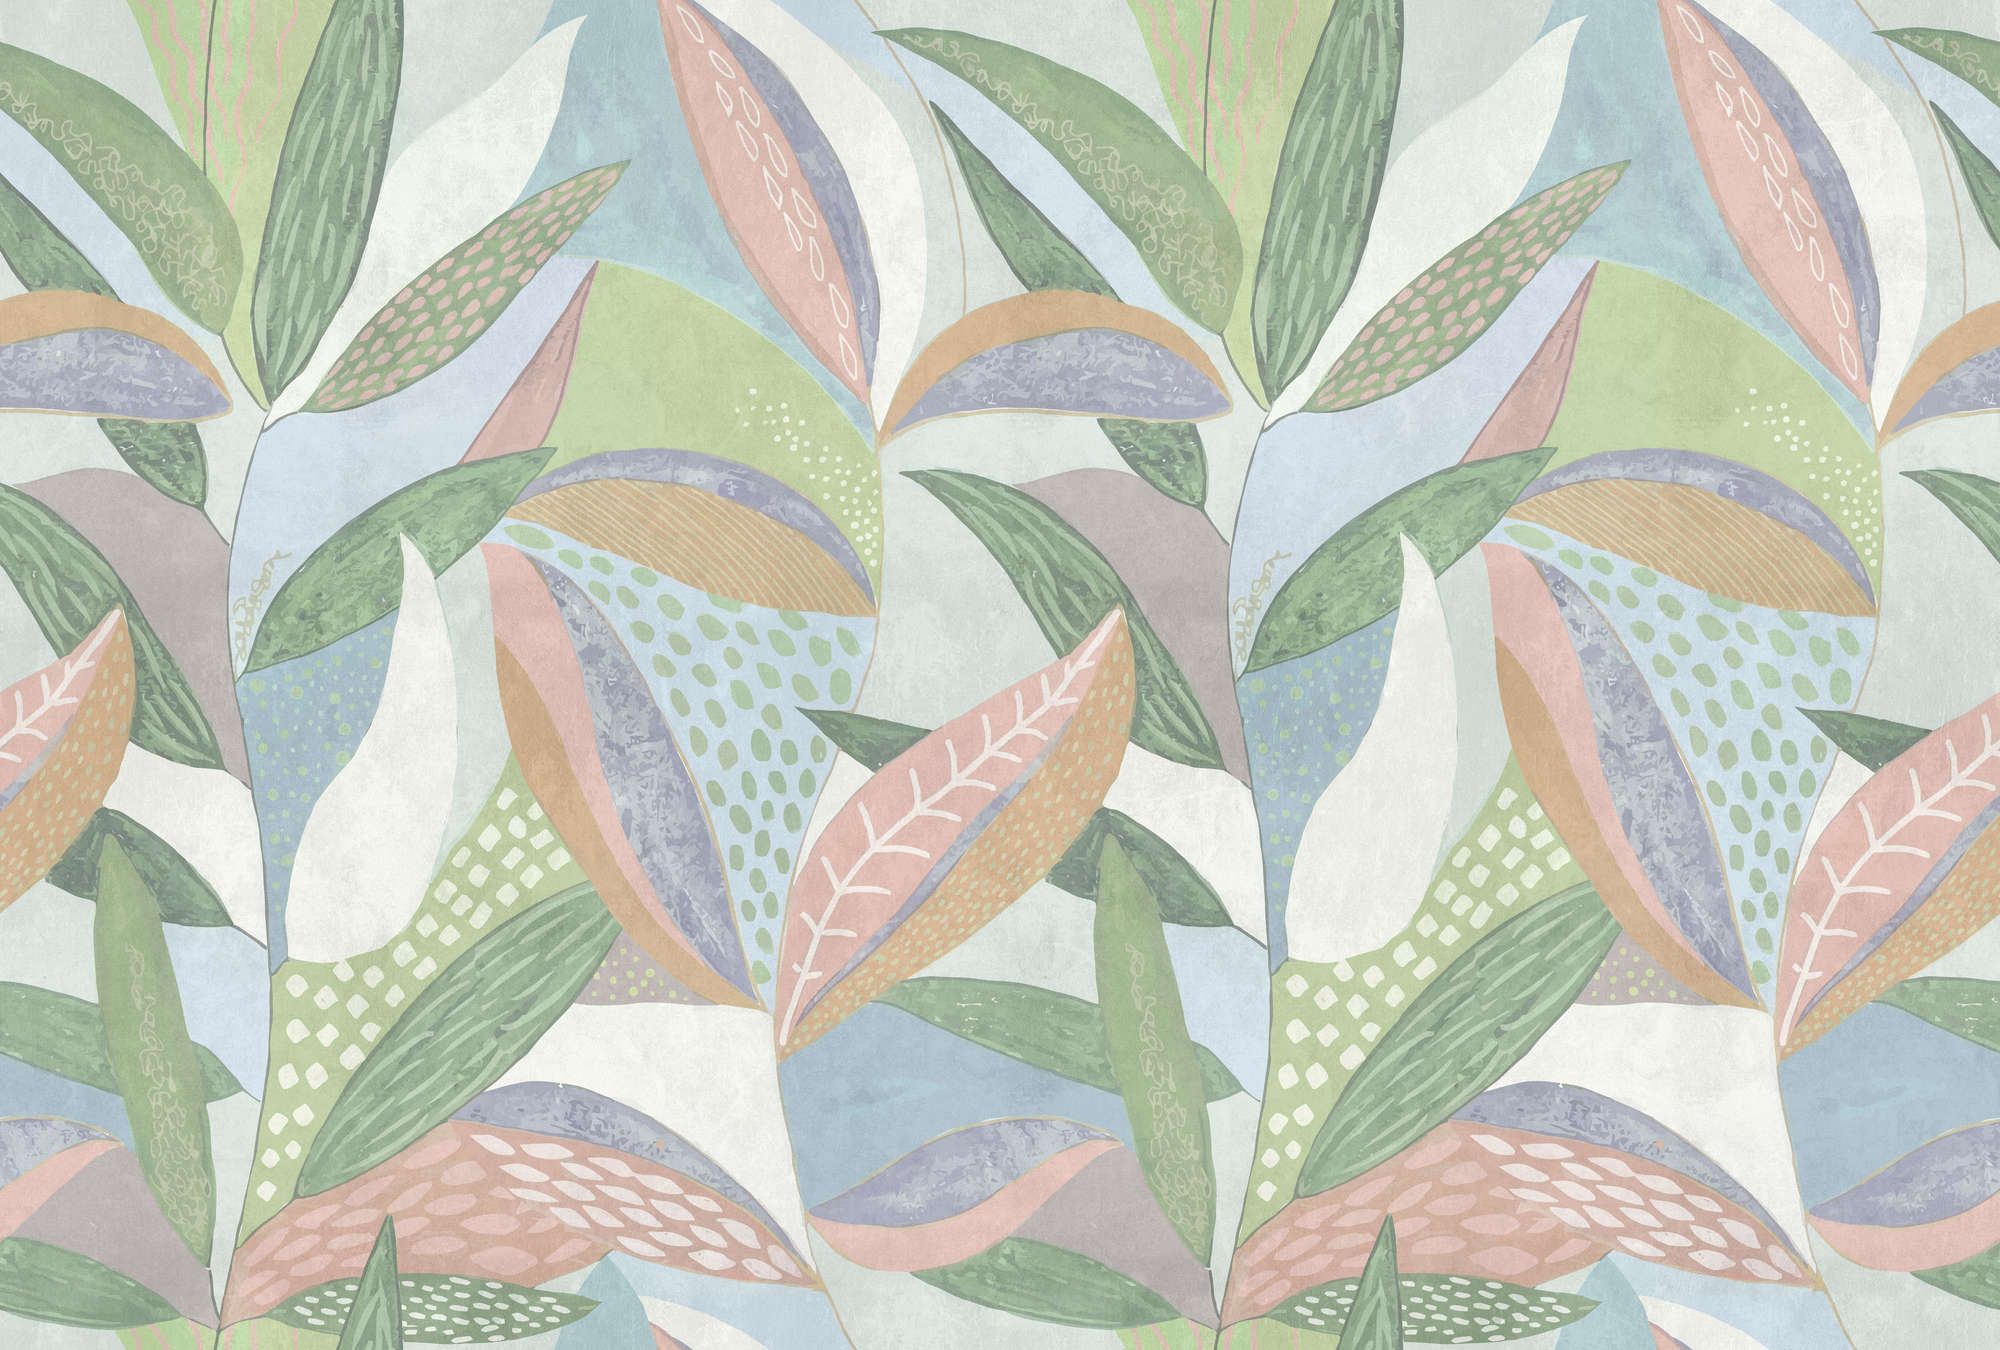             papier peint en papier »emilia« - Motif de feuilles pastel multicolores sur structure d'enduit béton - vert, bleu, rose | Intissé légèrement structuré
        